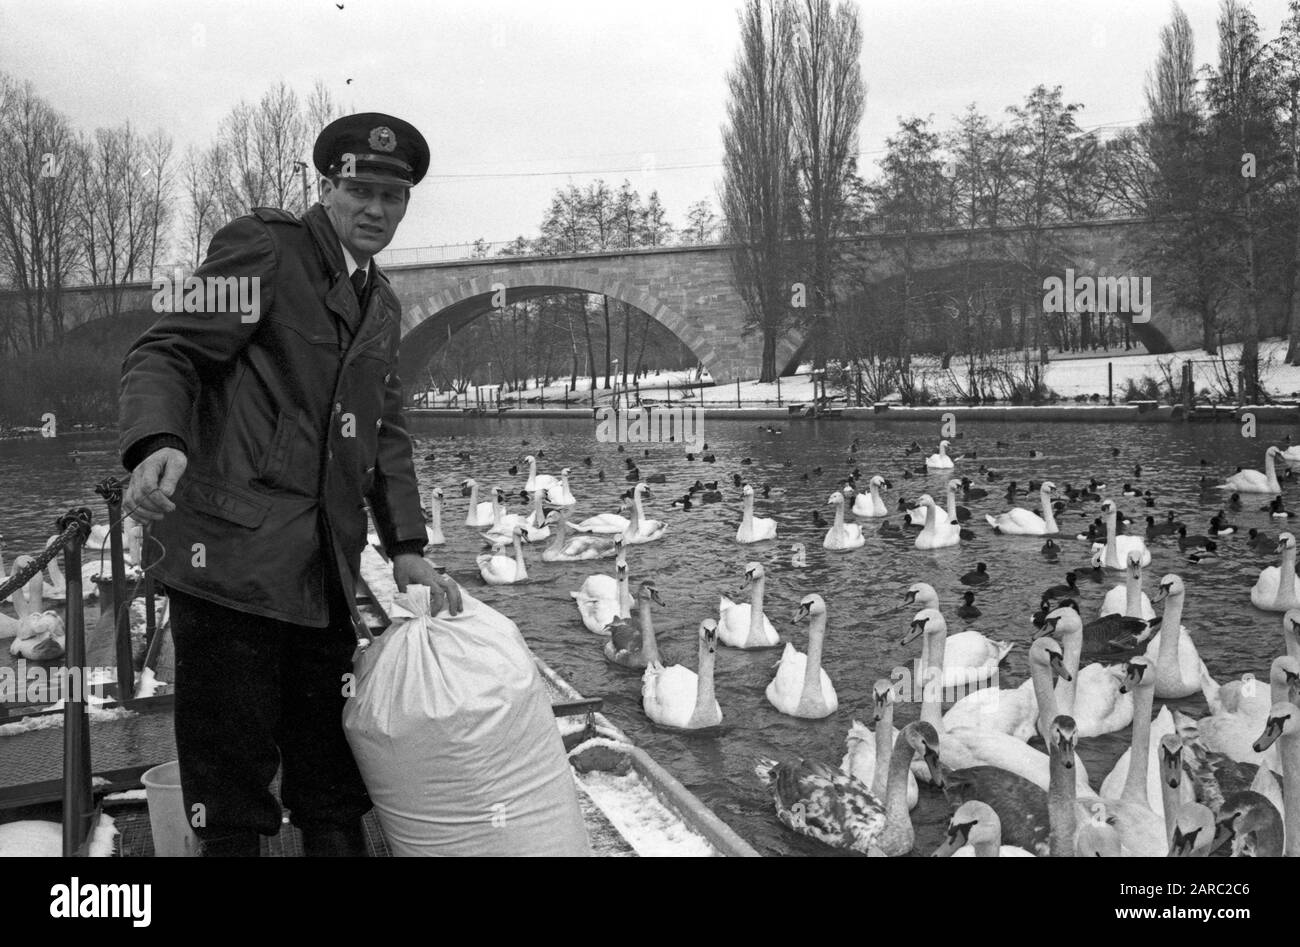 Der Schwanenvater Harald Niess kümmert sich um die Alsterschwäne in Hamburg, Deutschland 1970er Jahre. Stockman Harald Niess, genannt "Schwanenvater", füttert und kümmert sich um die Schwäne der Alster in Hamburg in den 1970er Jahren. Stockfoto